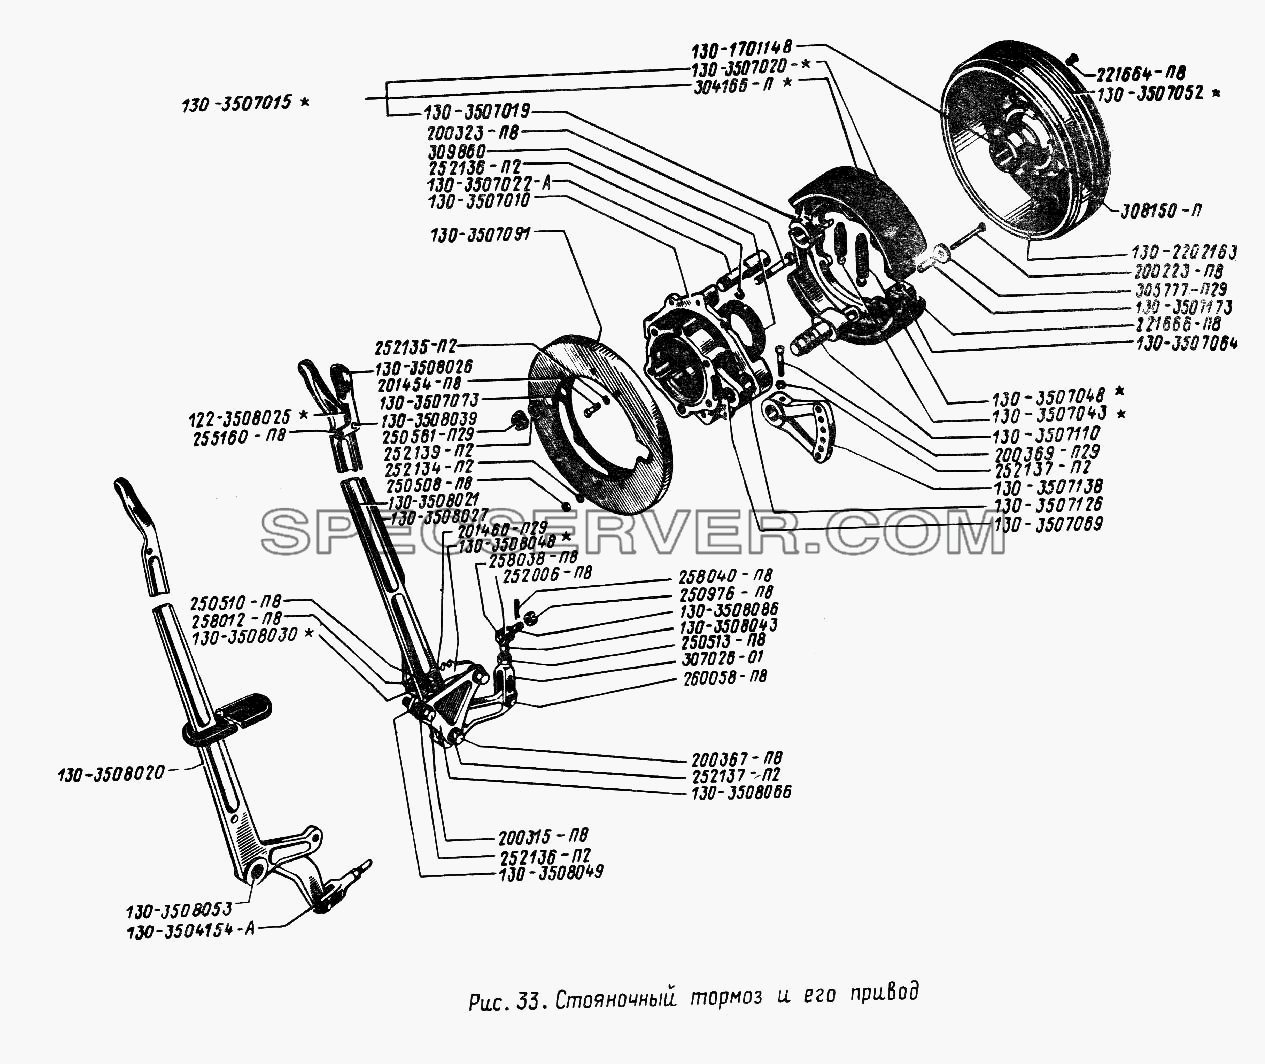 Стояночный тормоз и его привод для ЗИЛА 431410 (130) (список запасных частей)